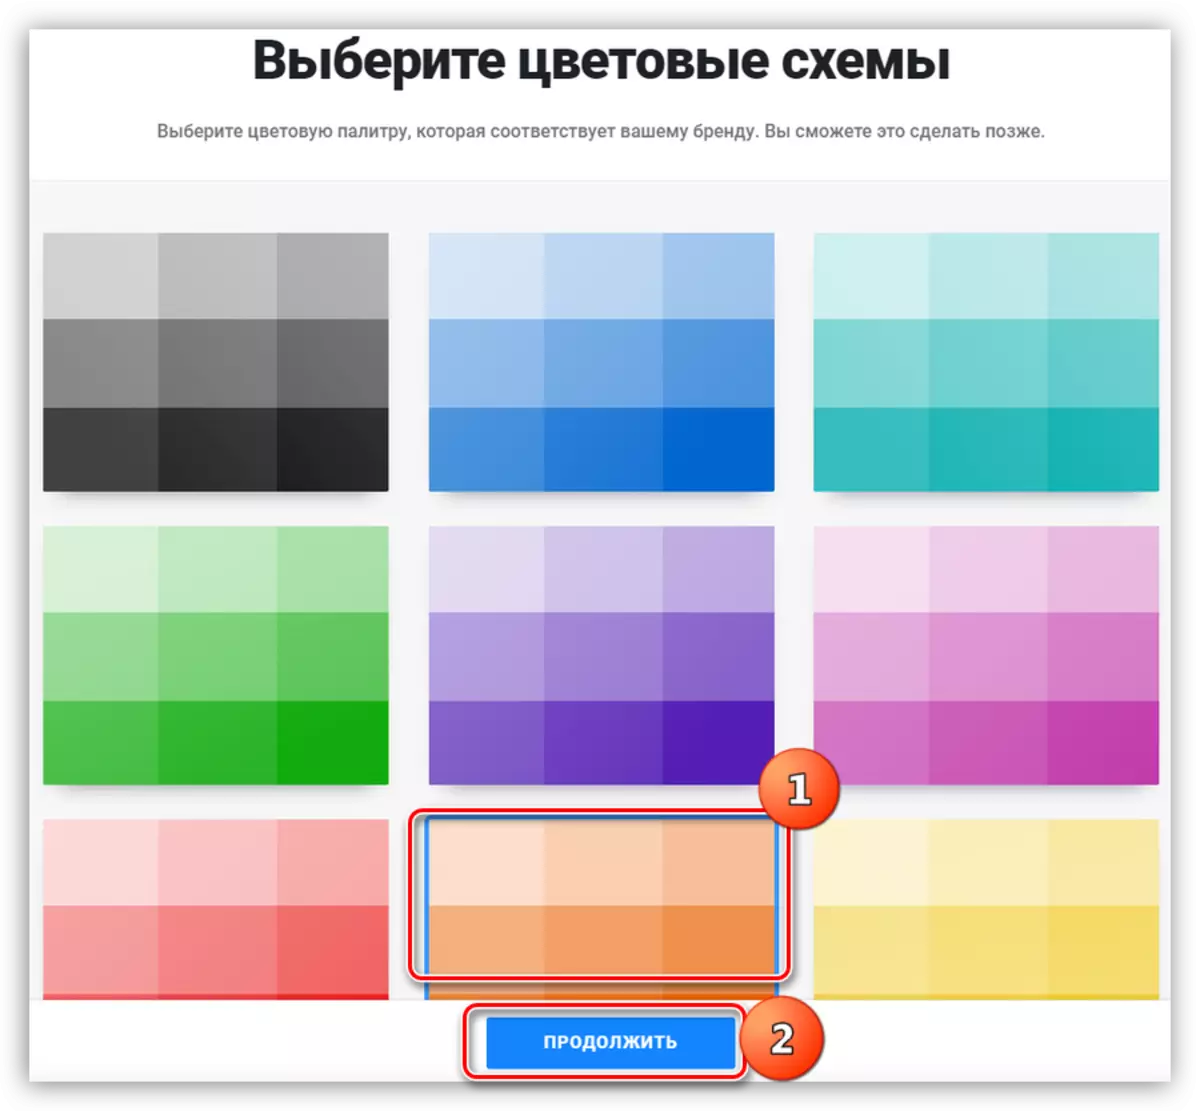 Vyberte barevný schéma loga na službě Turbologo